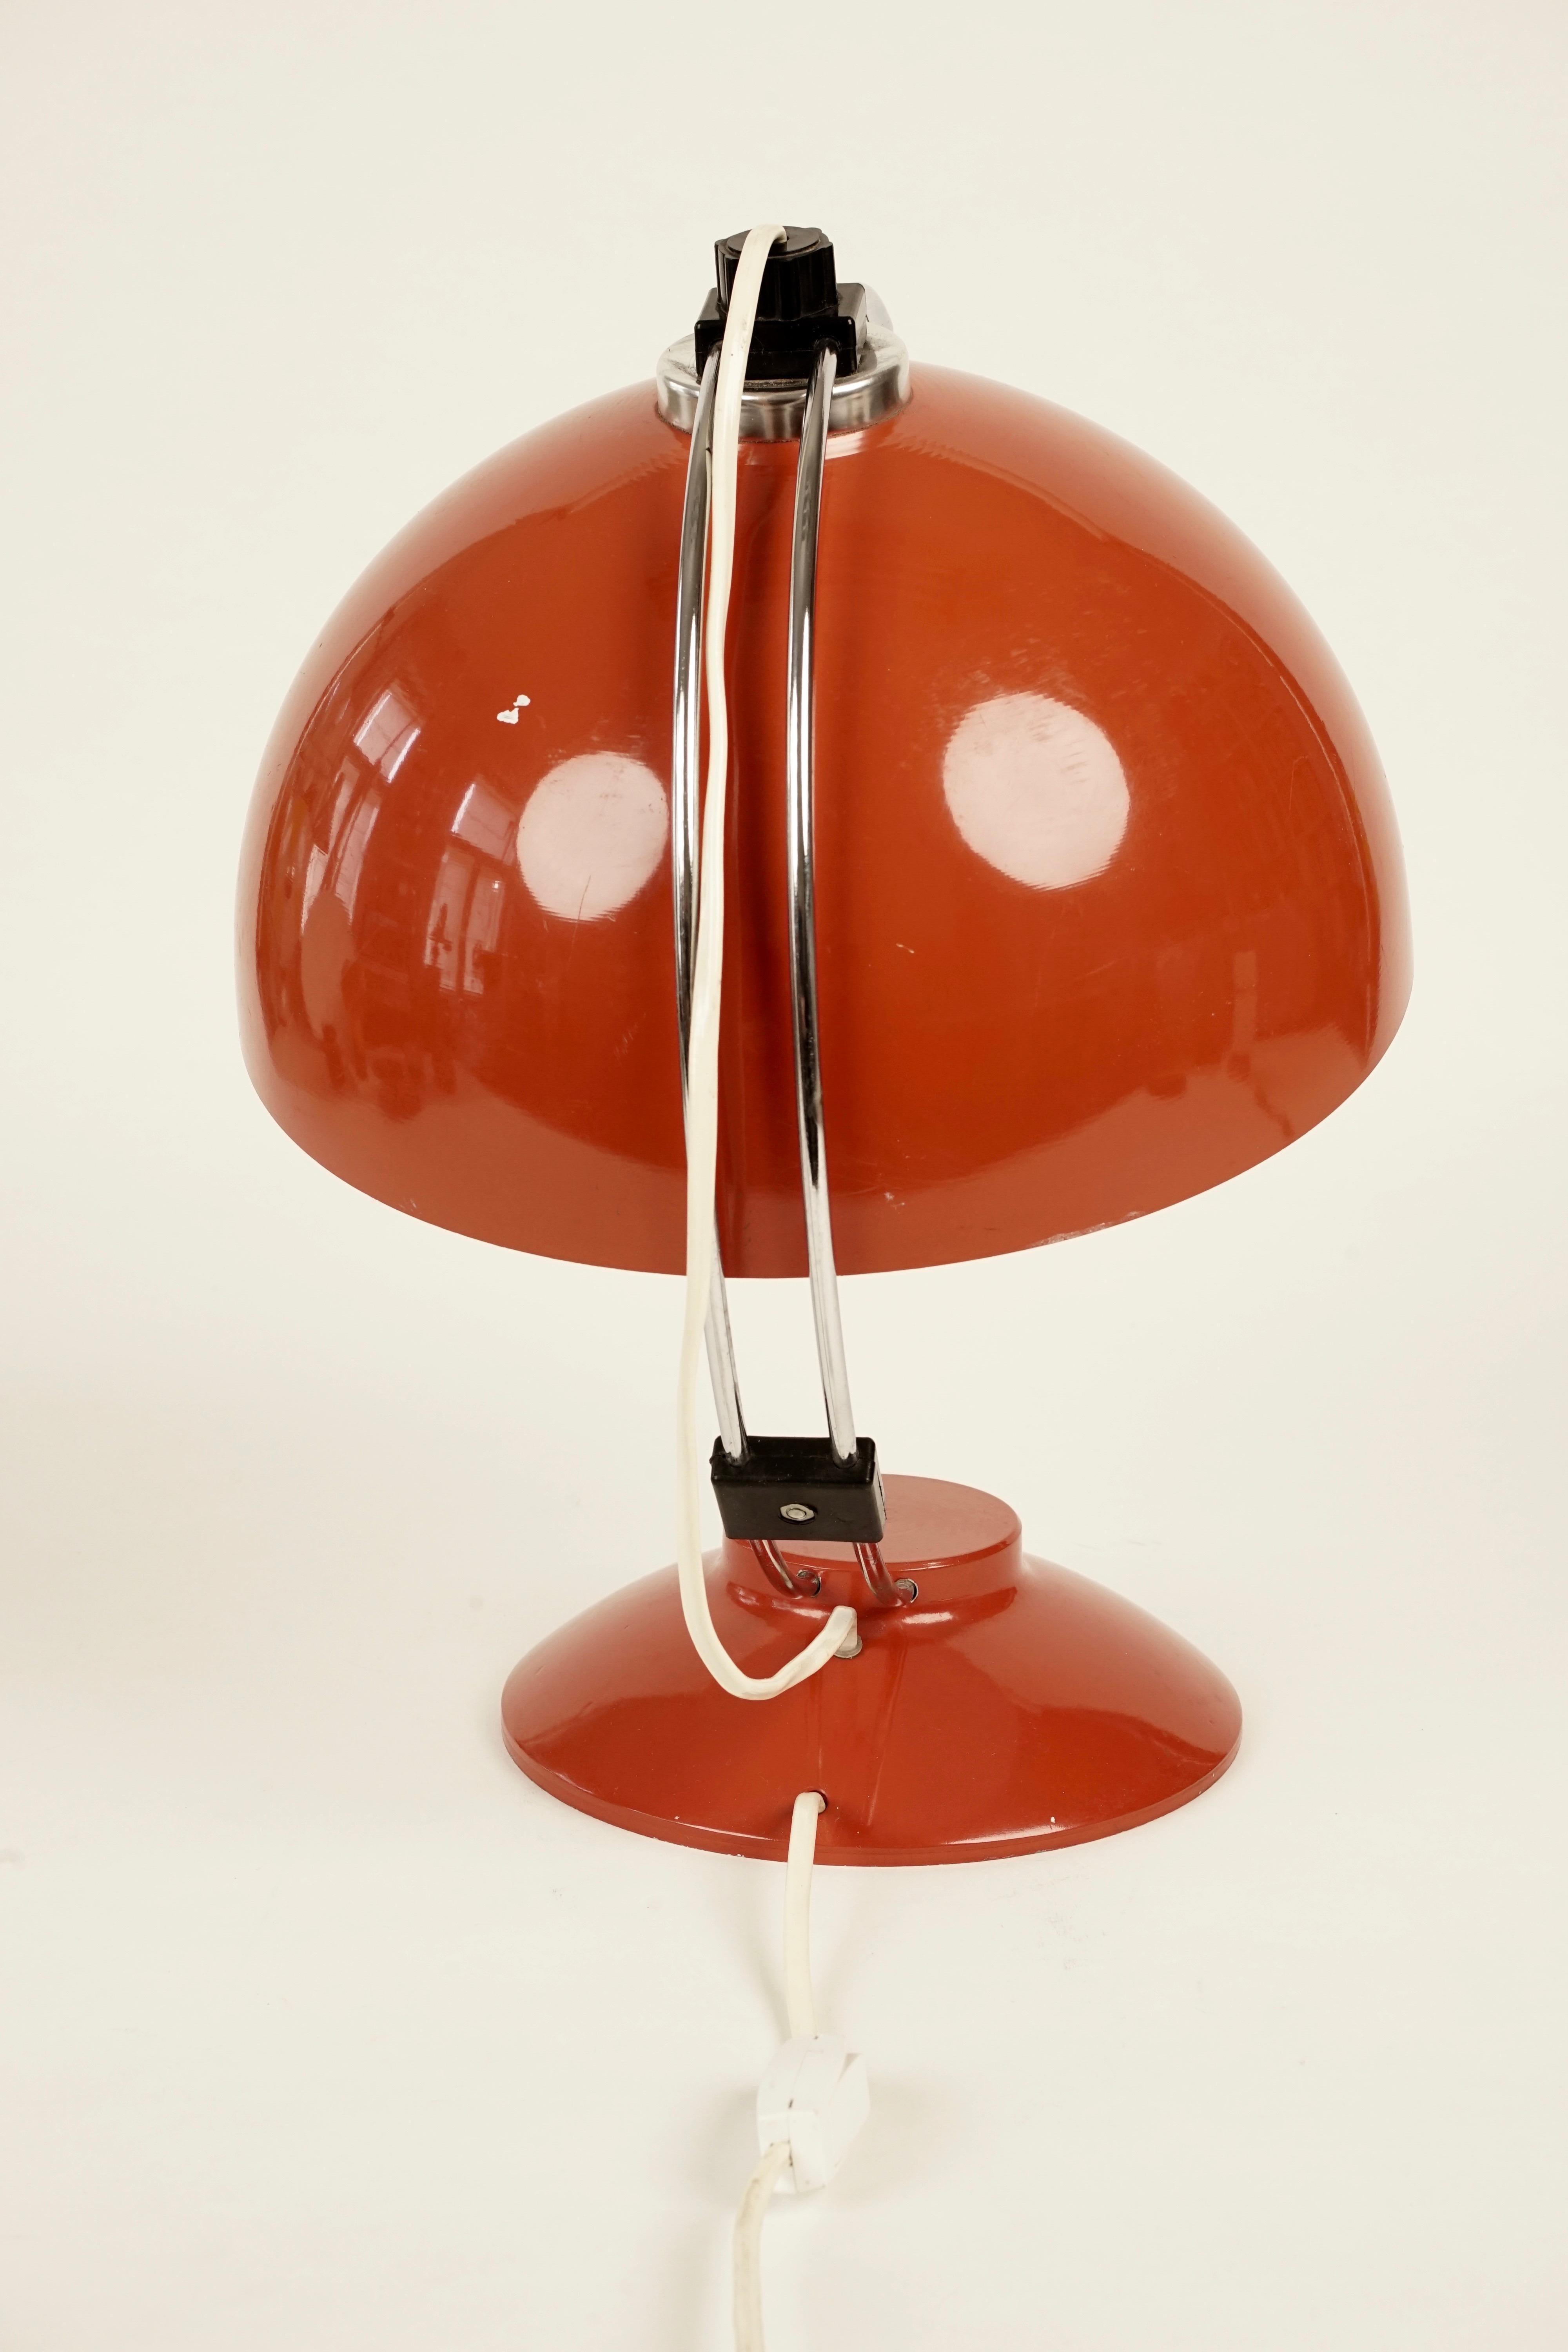 Une belle lampe de table rouge des années 1970. La lampe est composée d'une lourde base rouge avec une tige chromée incurvée.
L'abat-jour peut être réglé en le faisant glisser le long de la tige.